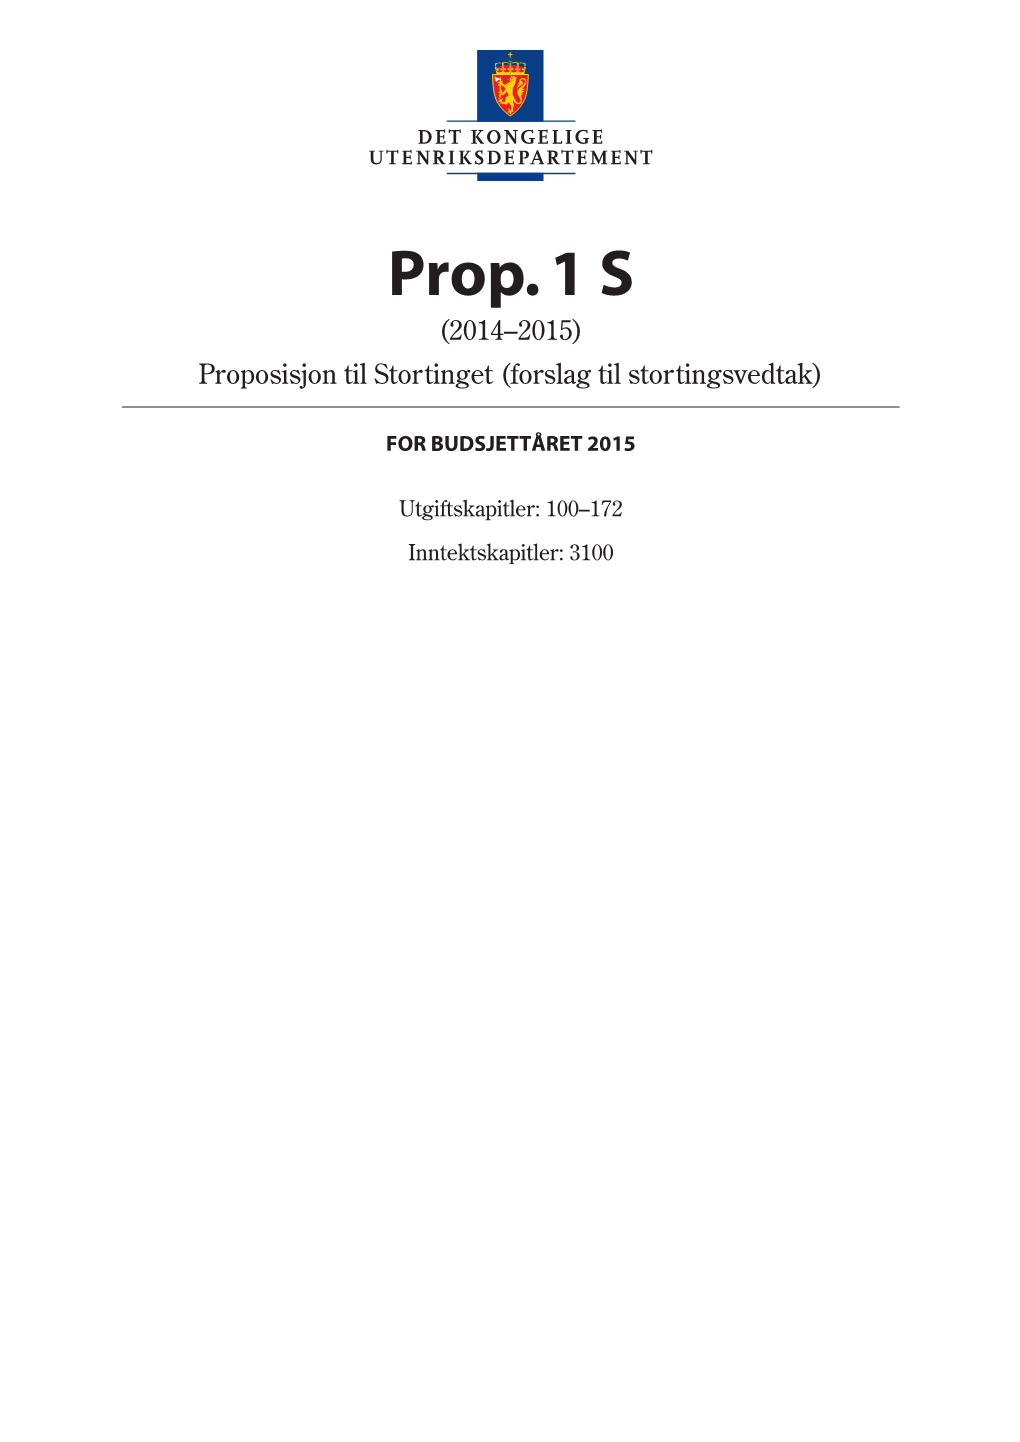 Prop. 1 S (2014–2015) Proposisjon Til Stortinget (Forslag Til Stortingsvedtak)